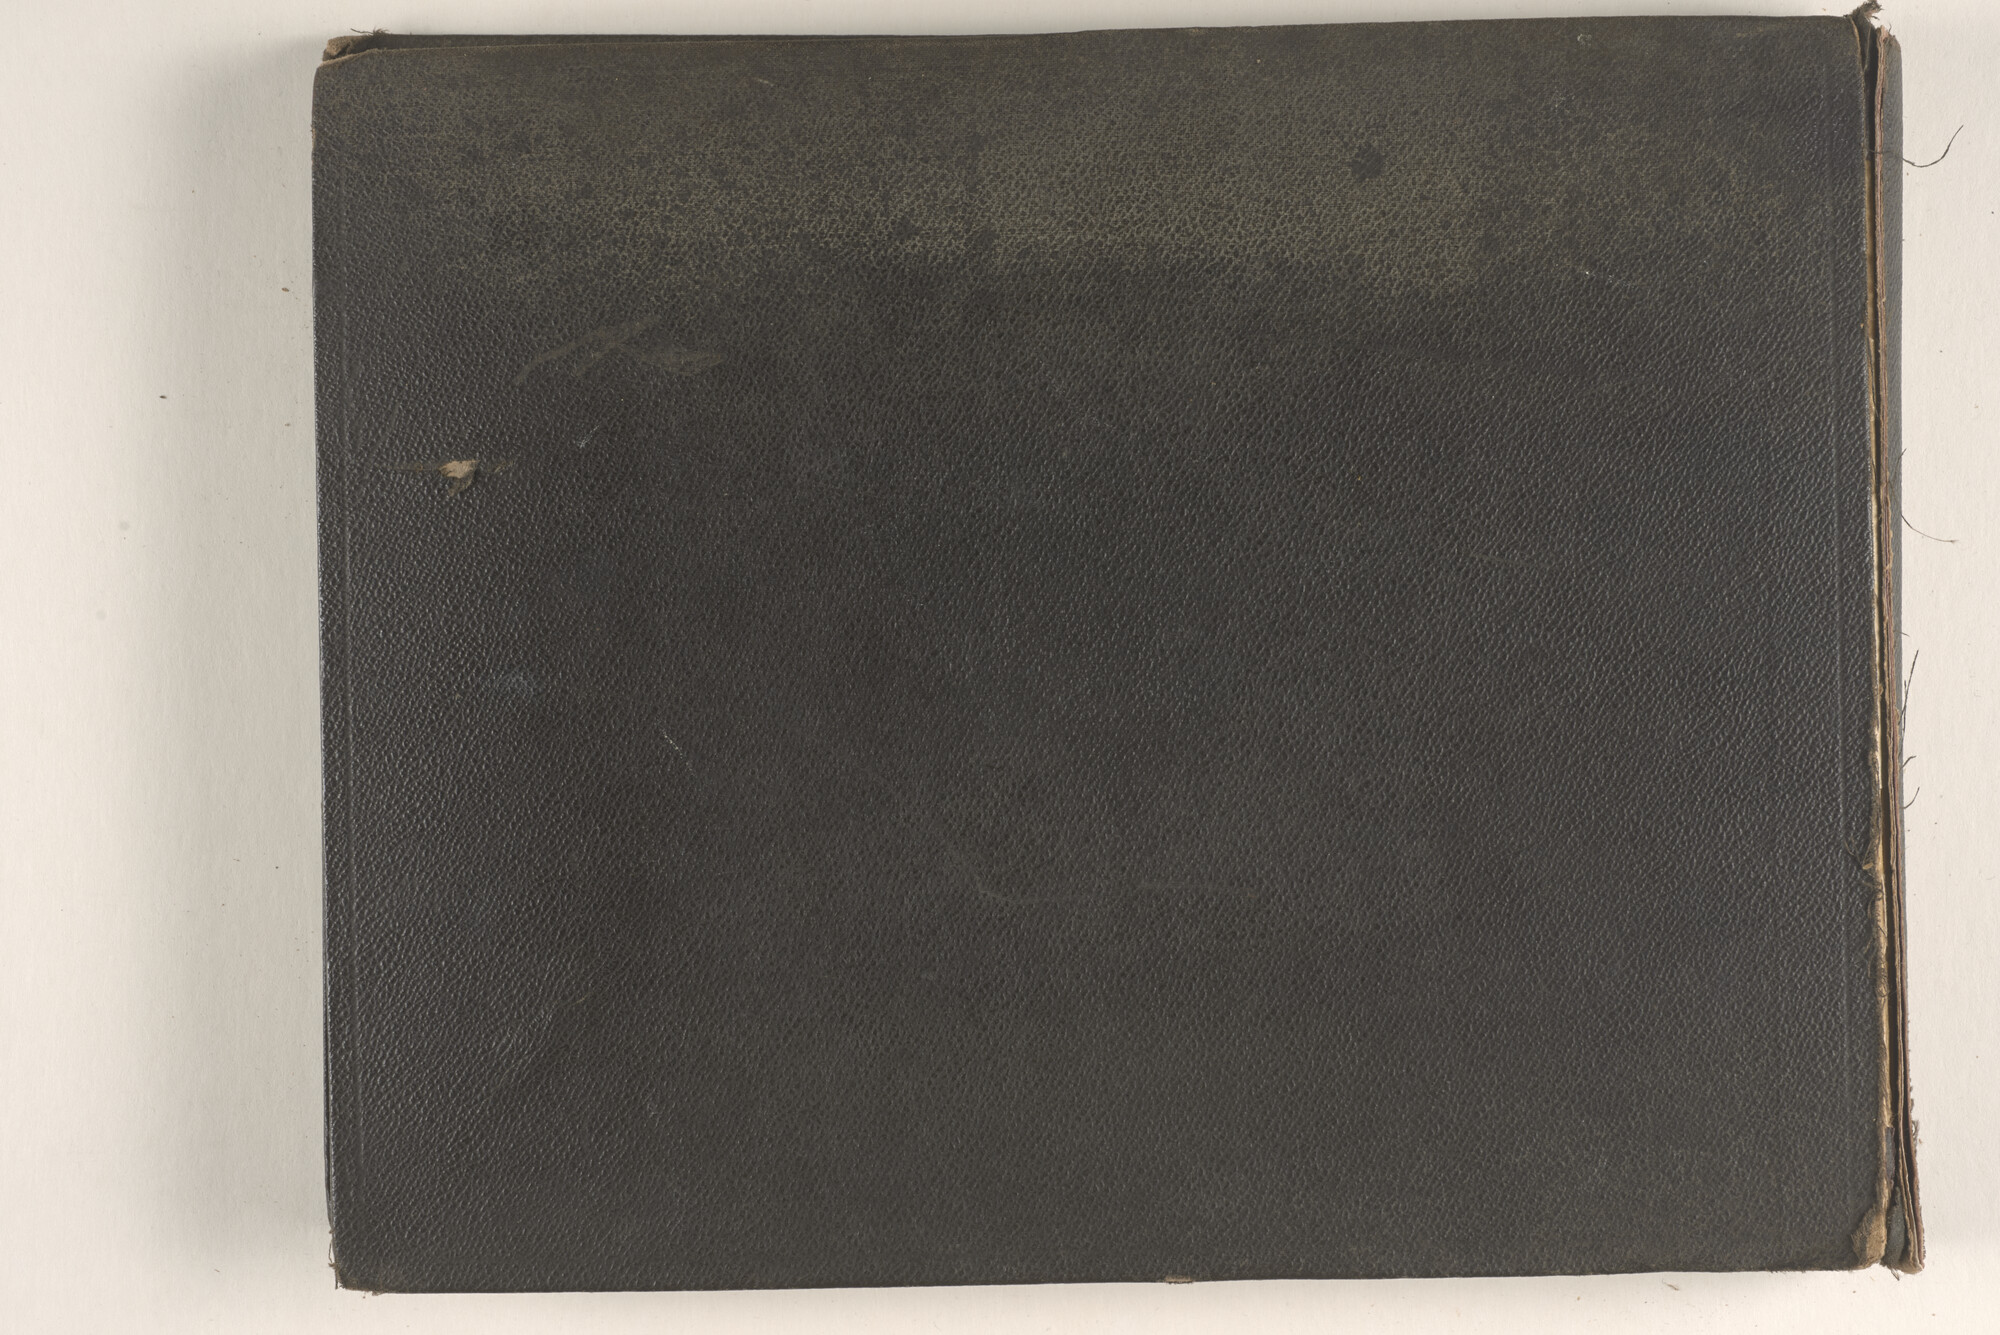 2015.0862; Fotoalbum met souvenirfoto’s verzameld tijdens de reizen van James Reginald Filz, 18 oktober 1901 t/m september 1904; fotoalbum